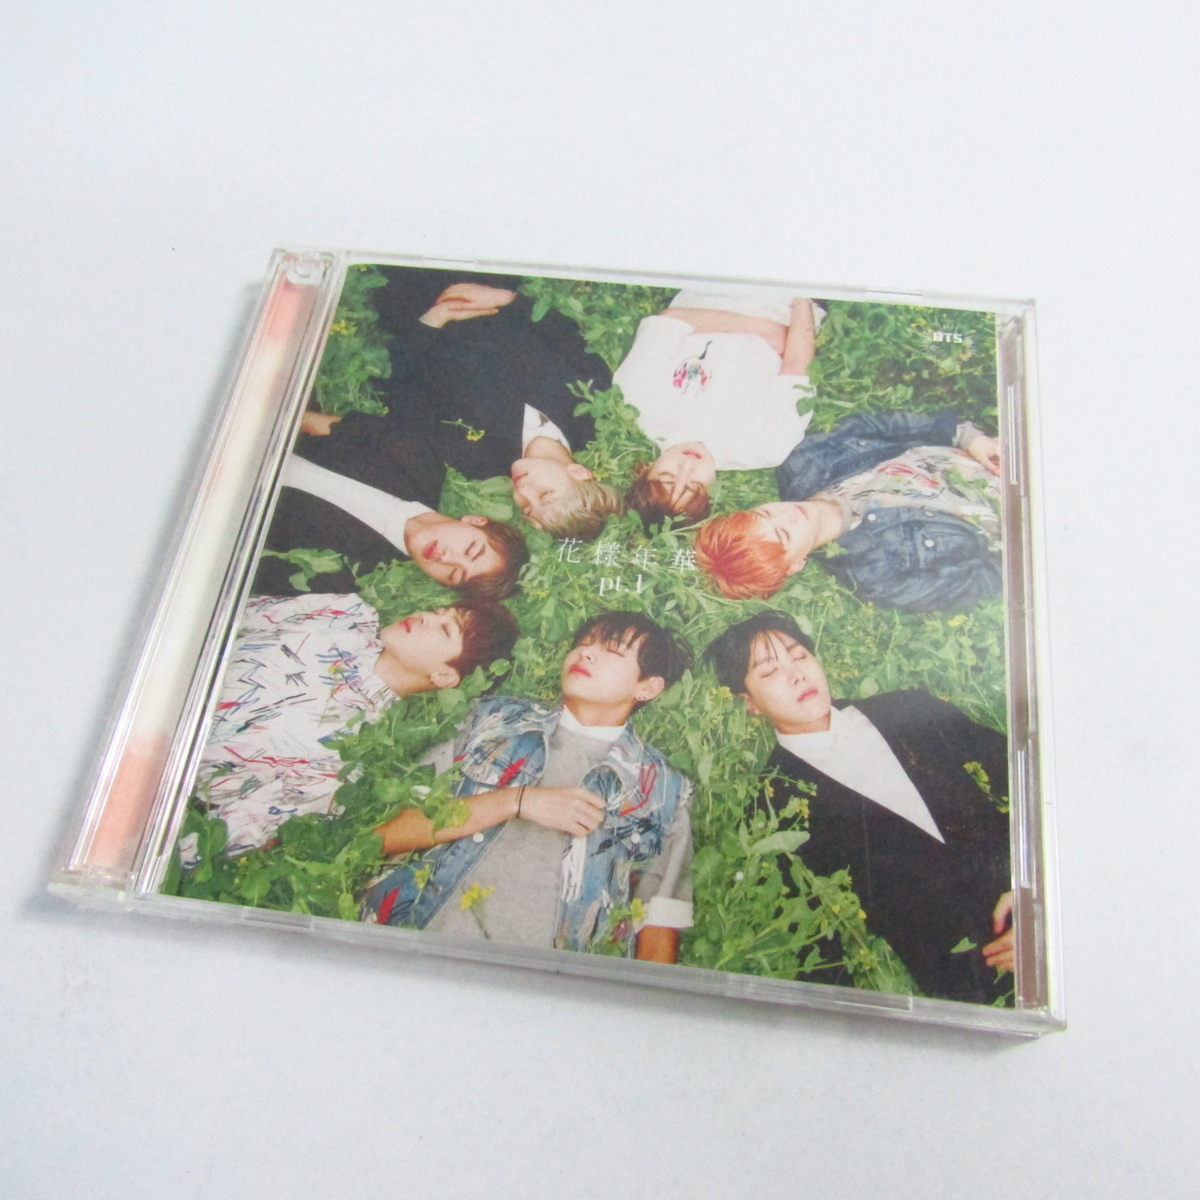 花様年華pt.1 BTS 防弾少年団 CD&DVD